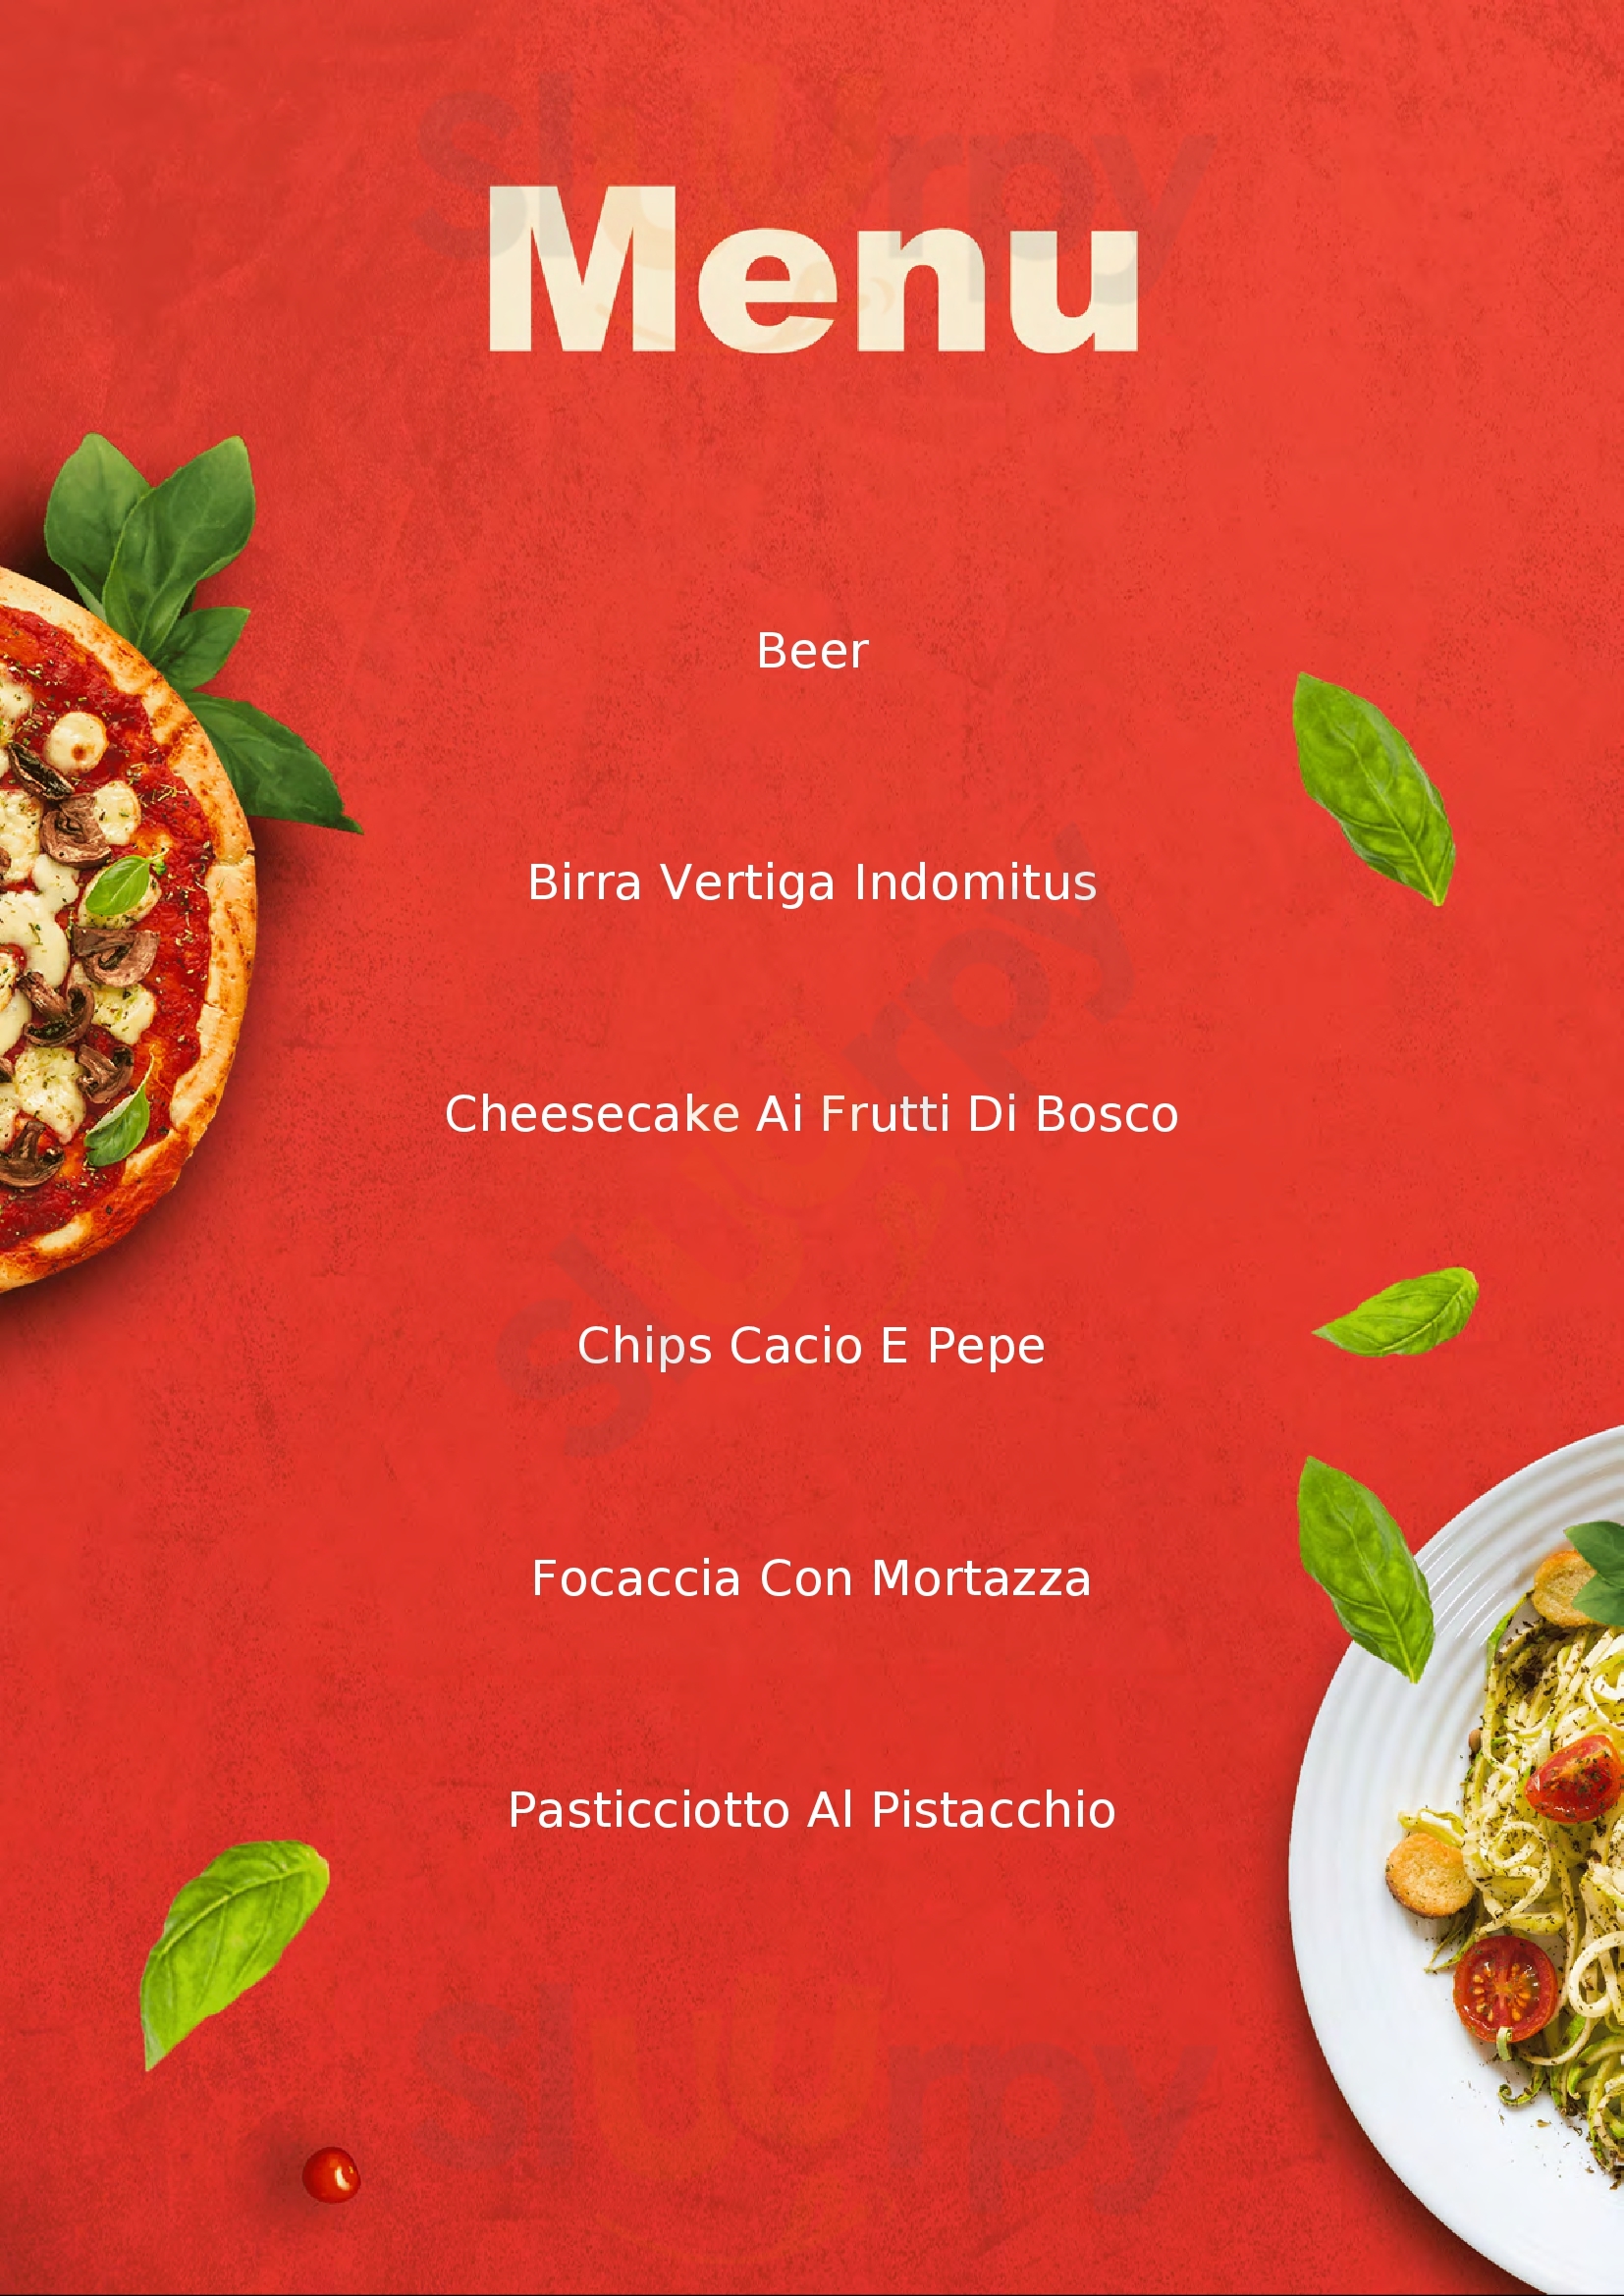 La Rustica Restaurant & Pizza Lecce menù 1 pagina